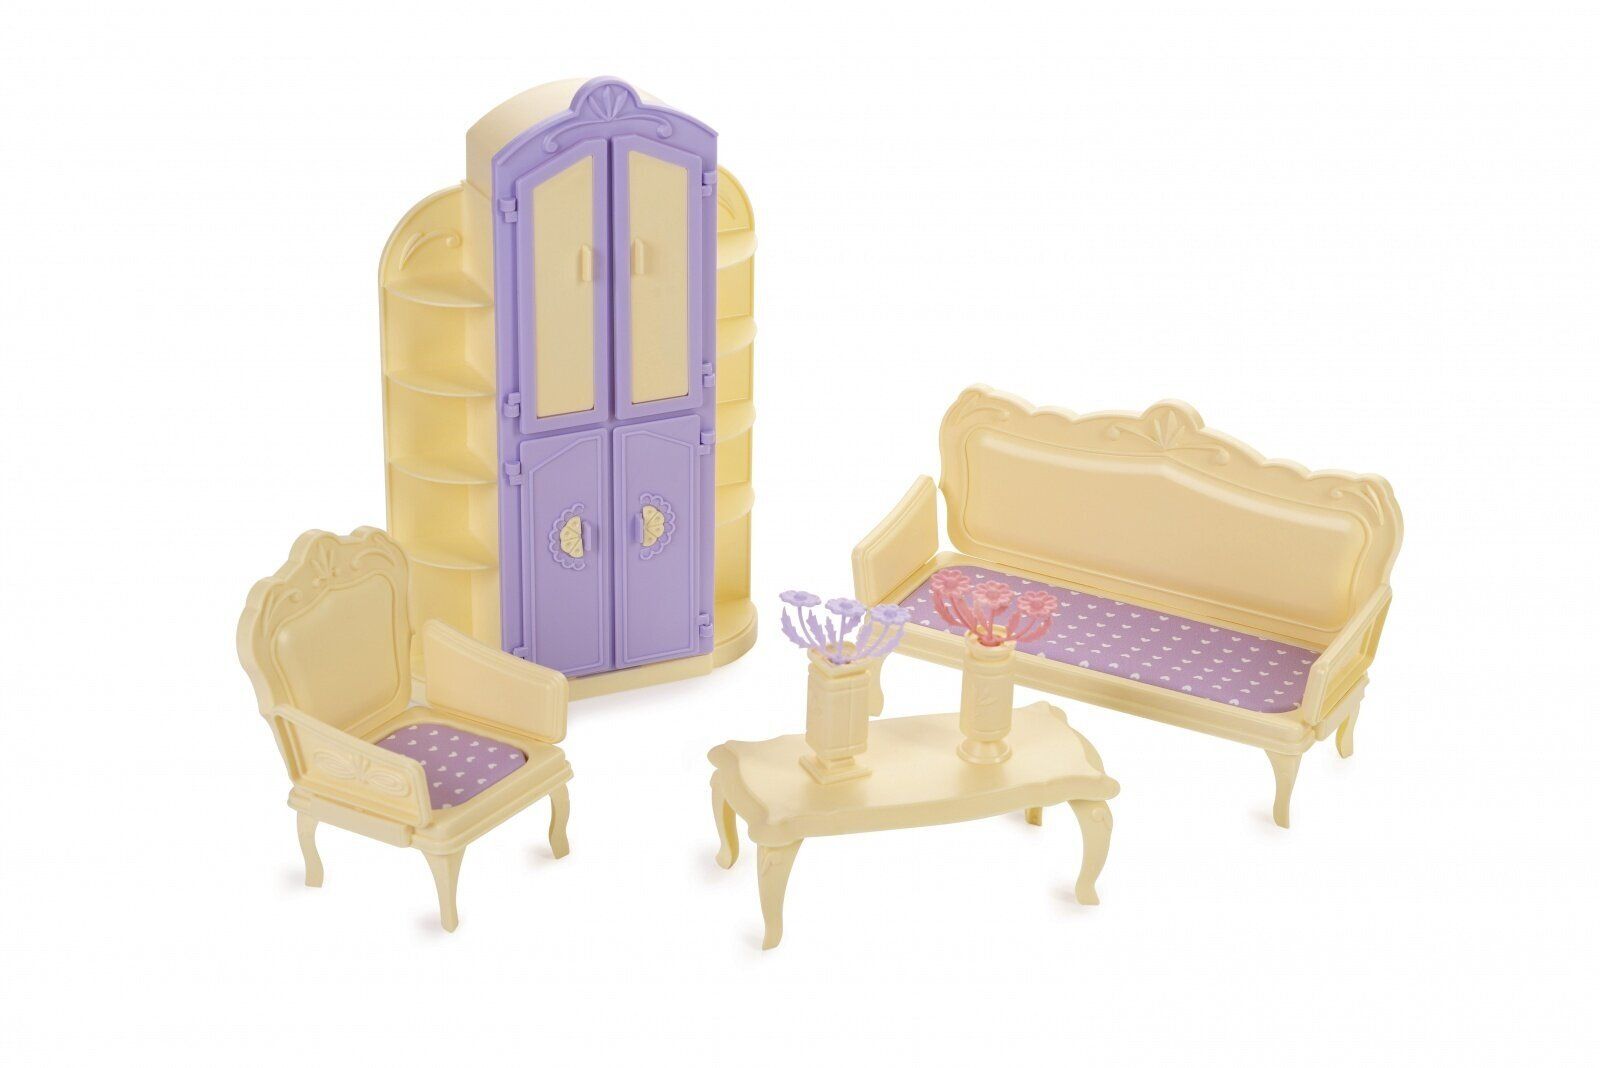 Гостиная комната Огонек Маленькая принцесса (лимонная) огонек кресло качалка маленькая принцесса розовый